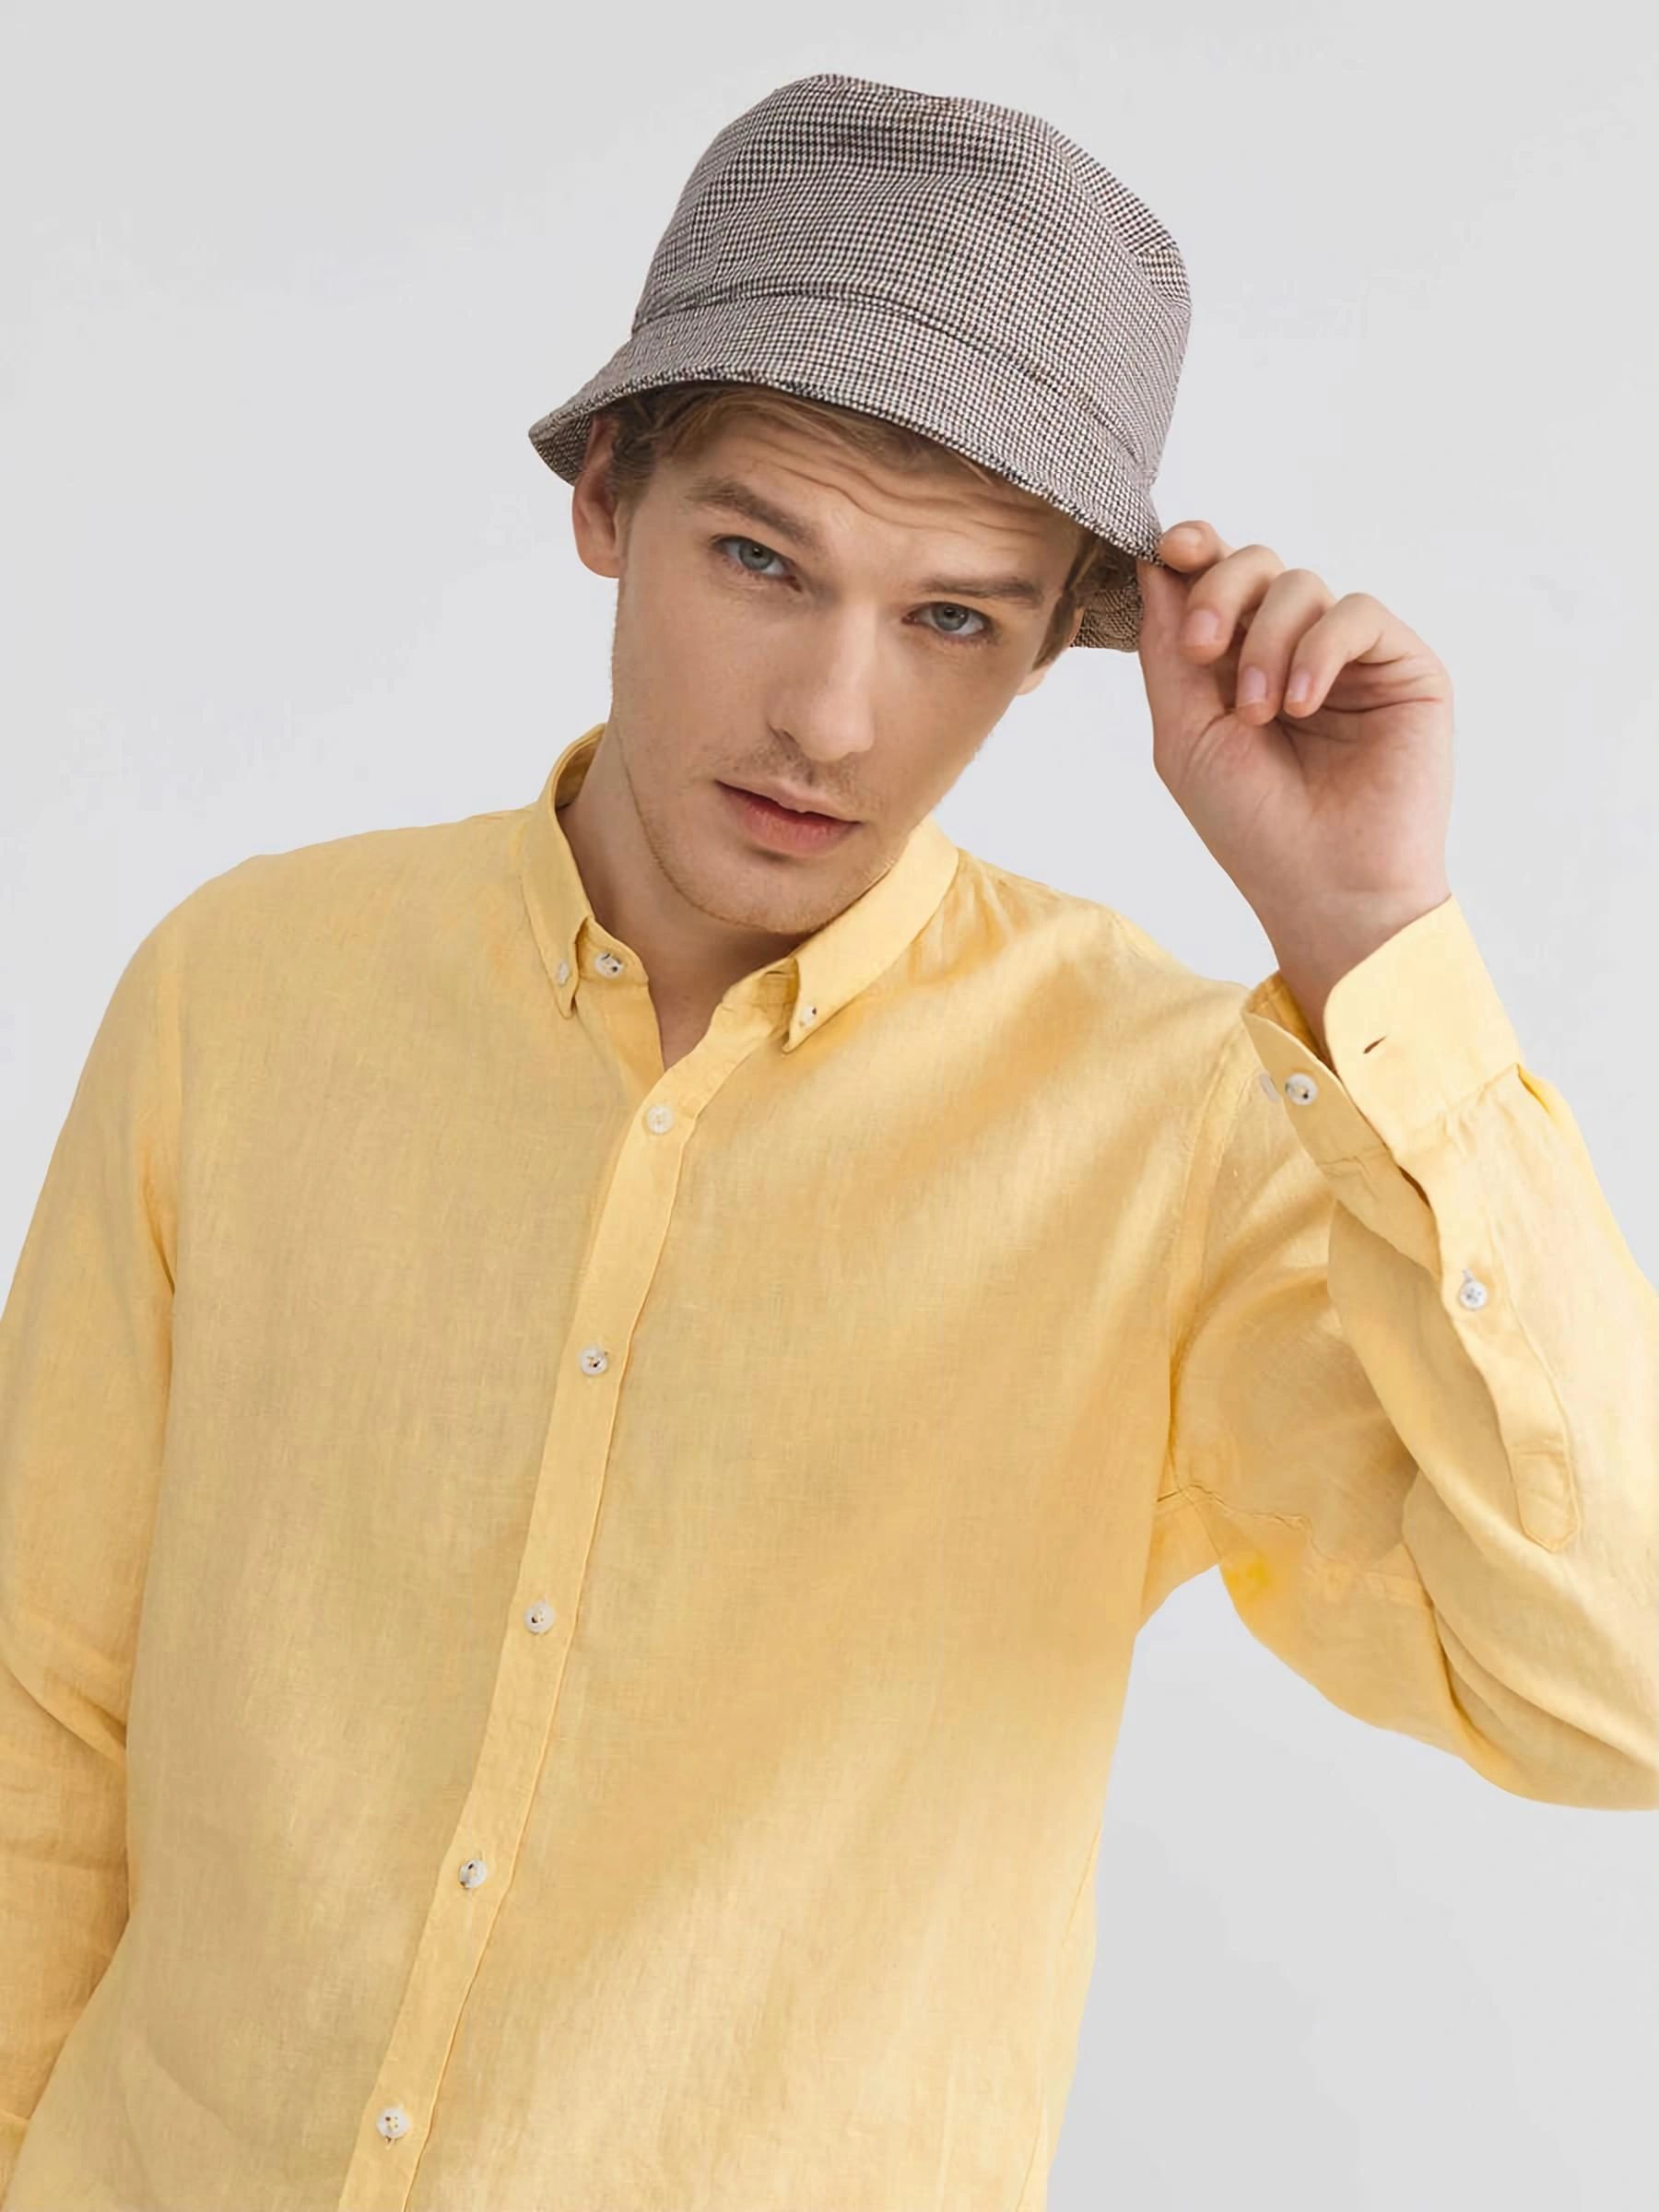 Male model wearing men's linen shirt at XluX menswear.